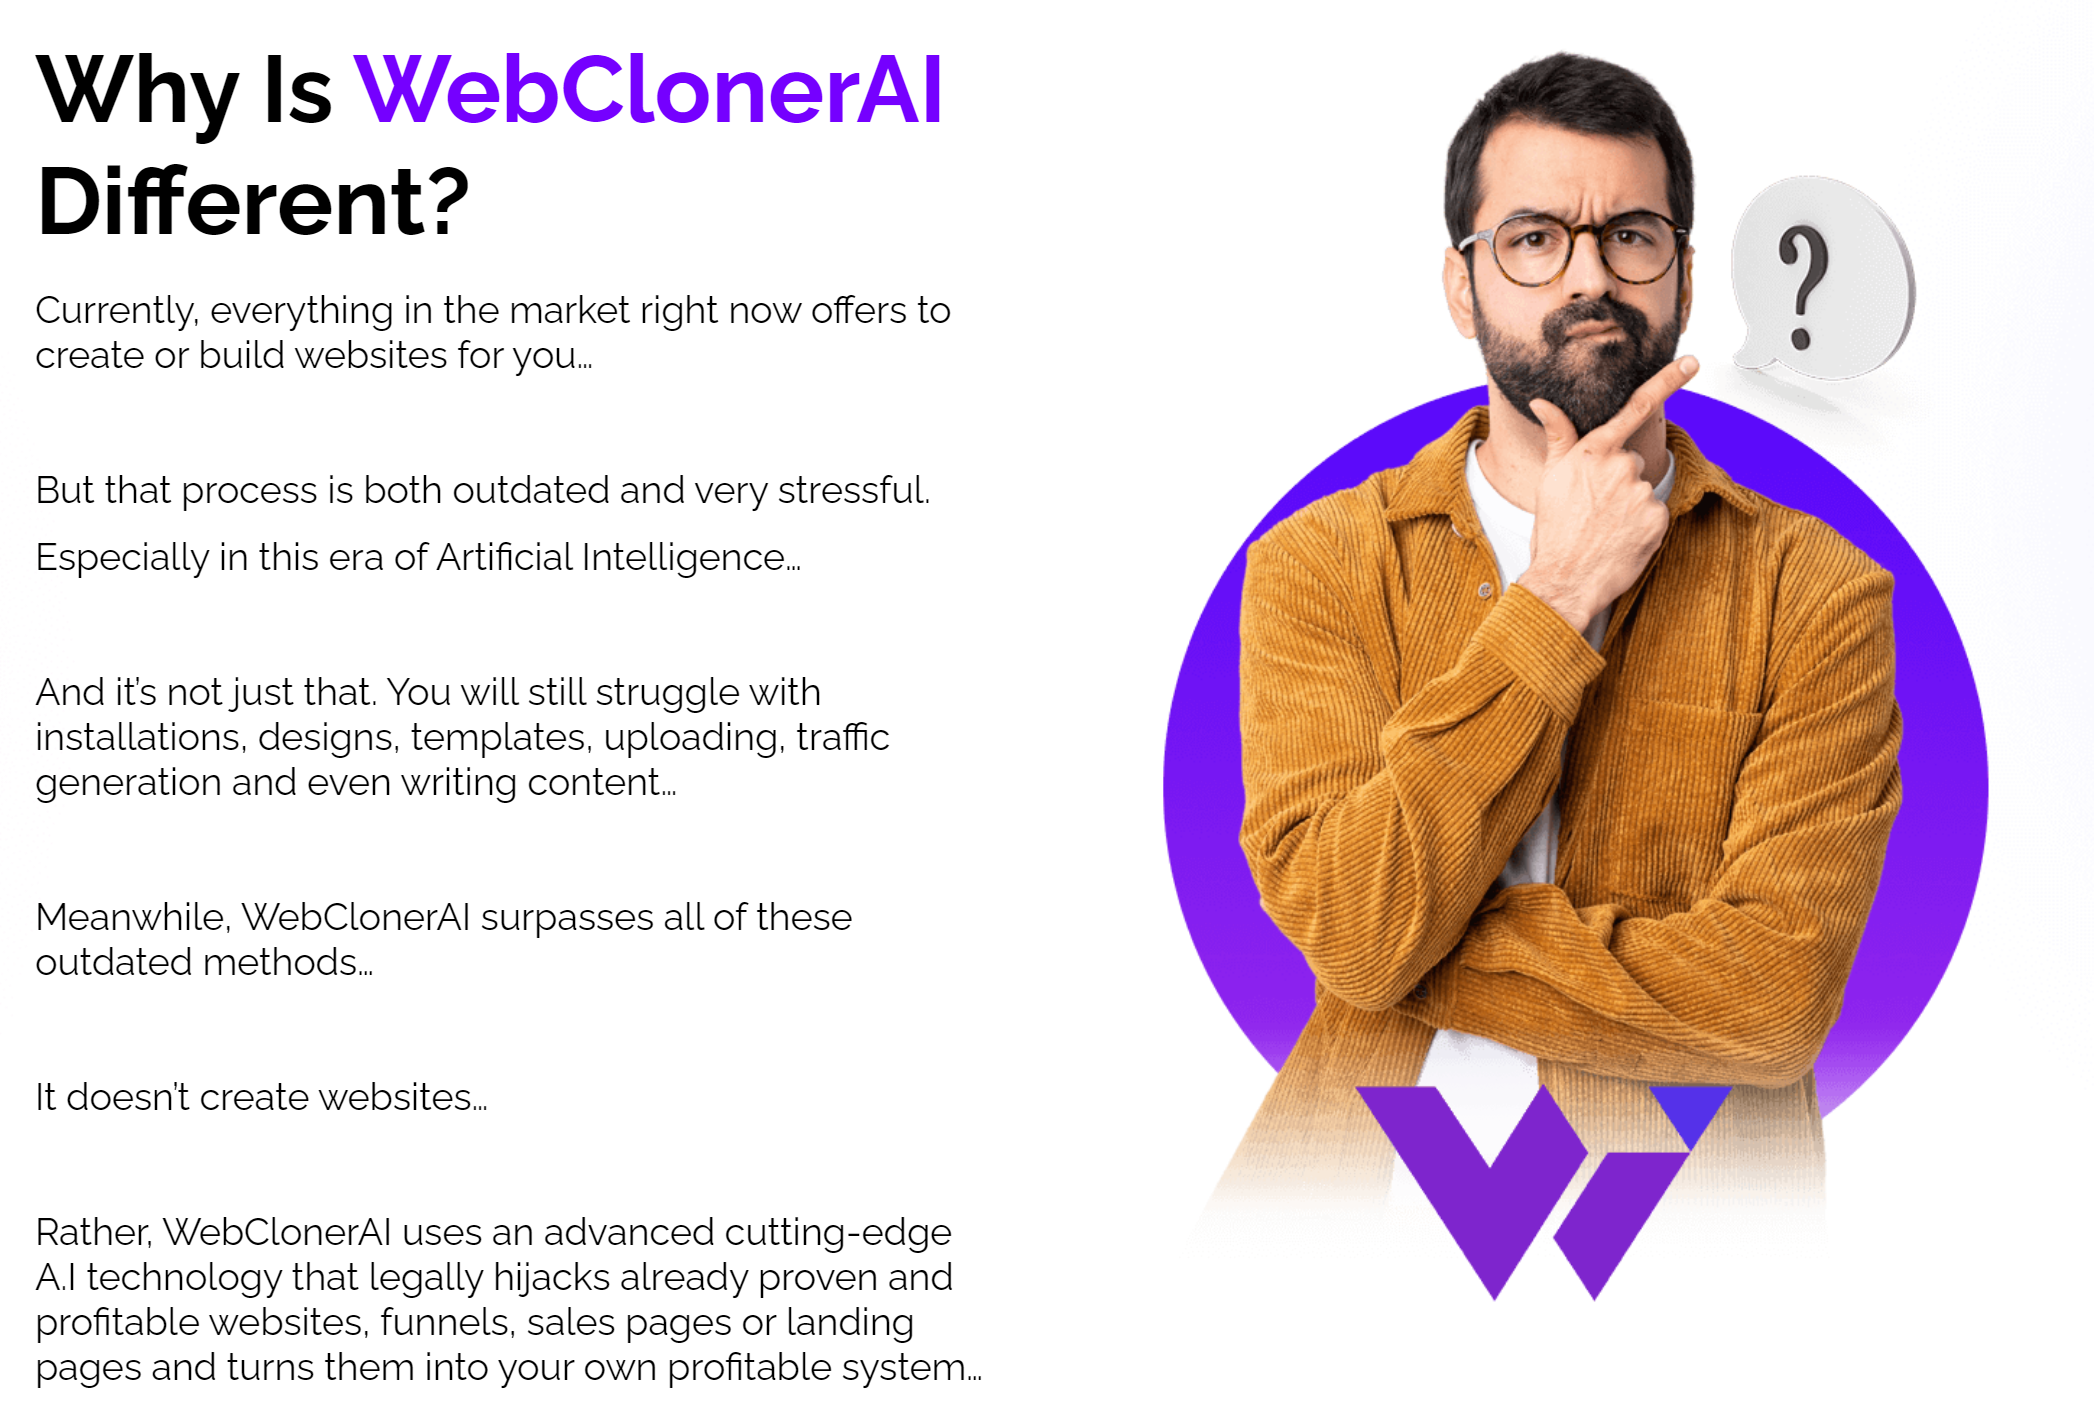 WebClonerAI